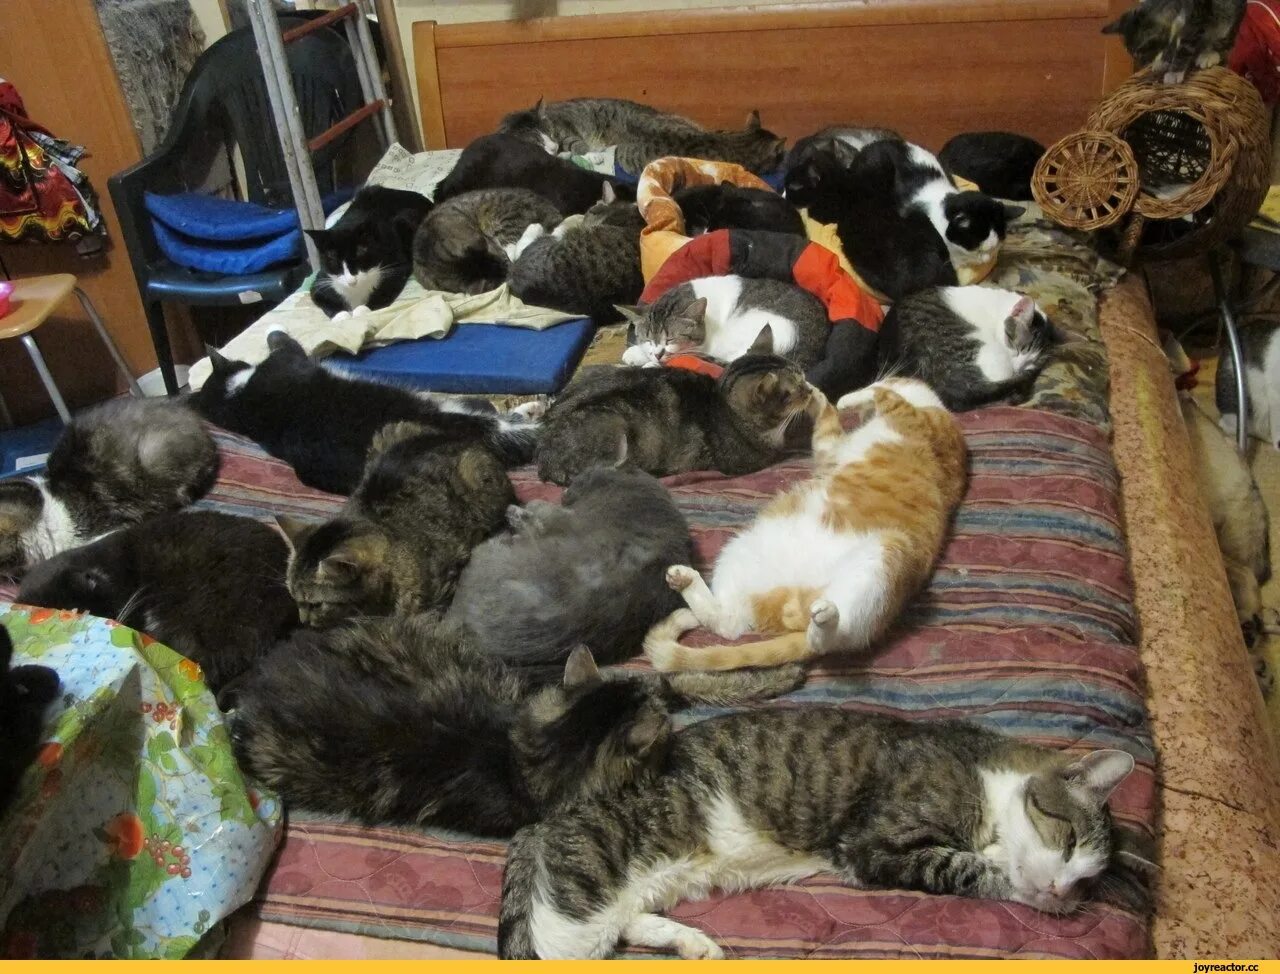 Русские много спят. Много кошек. Коты спят много. Много кошек в квартире. Много котов.